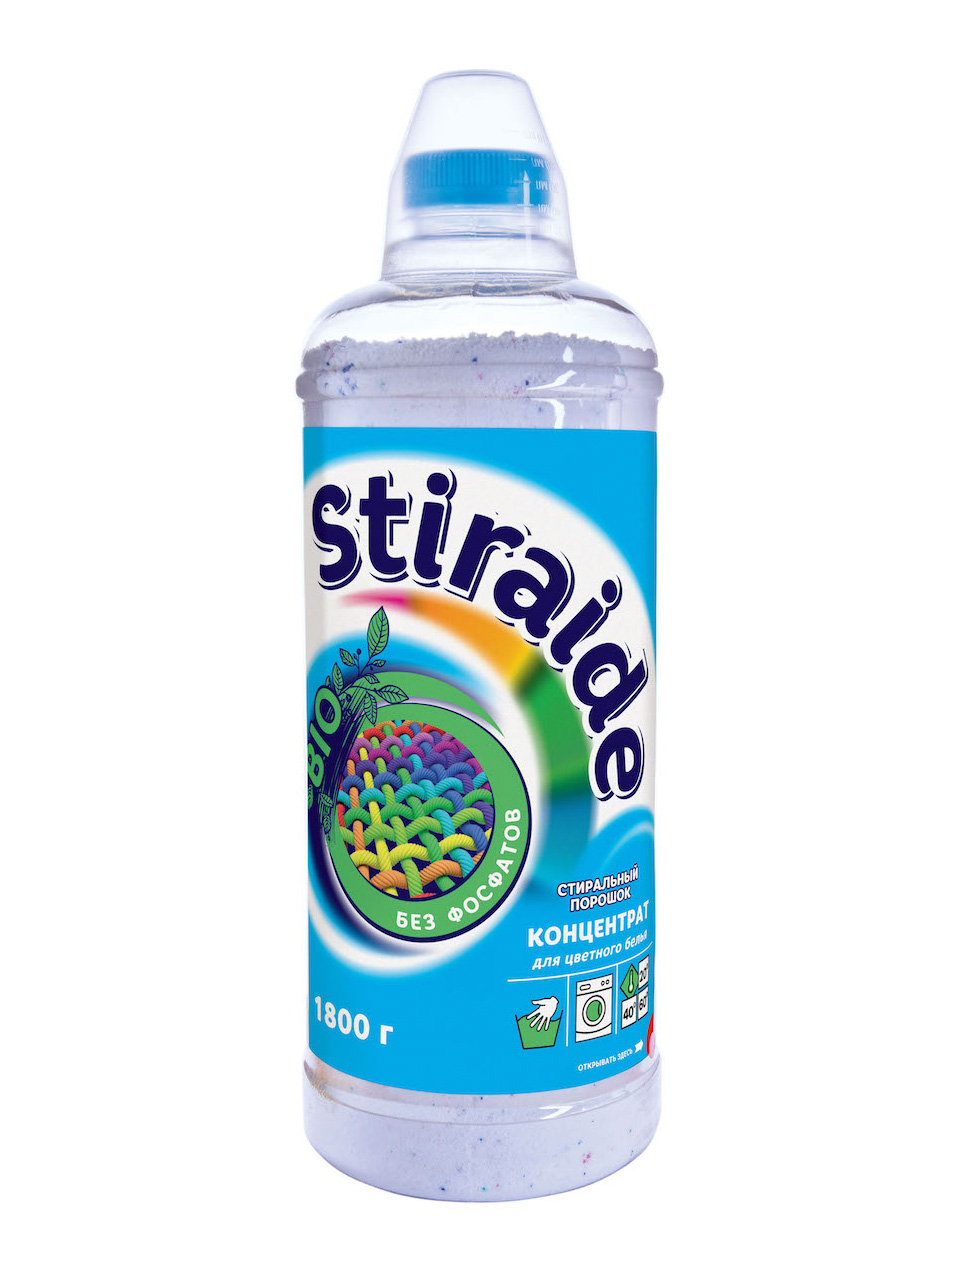 фото Стиральный порошок ваше хозяйство stiraide концентрат для цветного белья 1,8кг